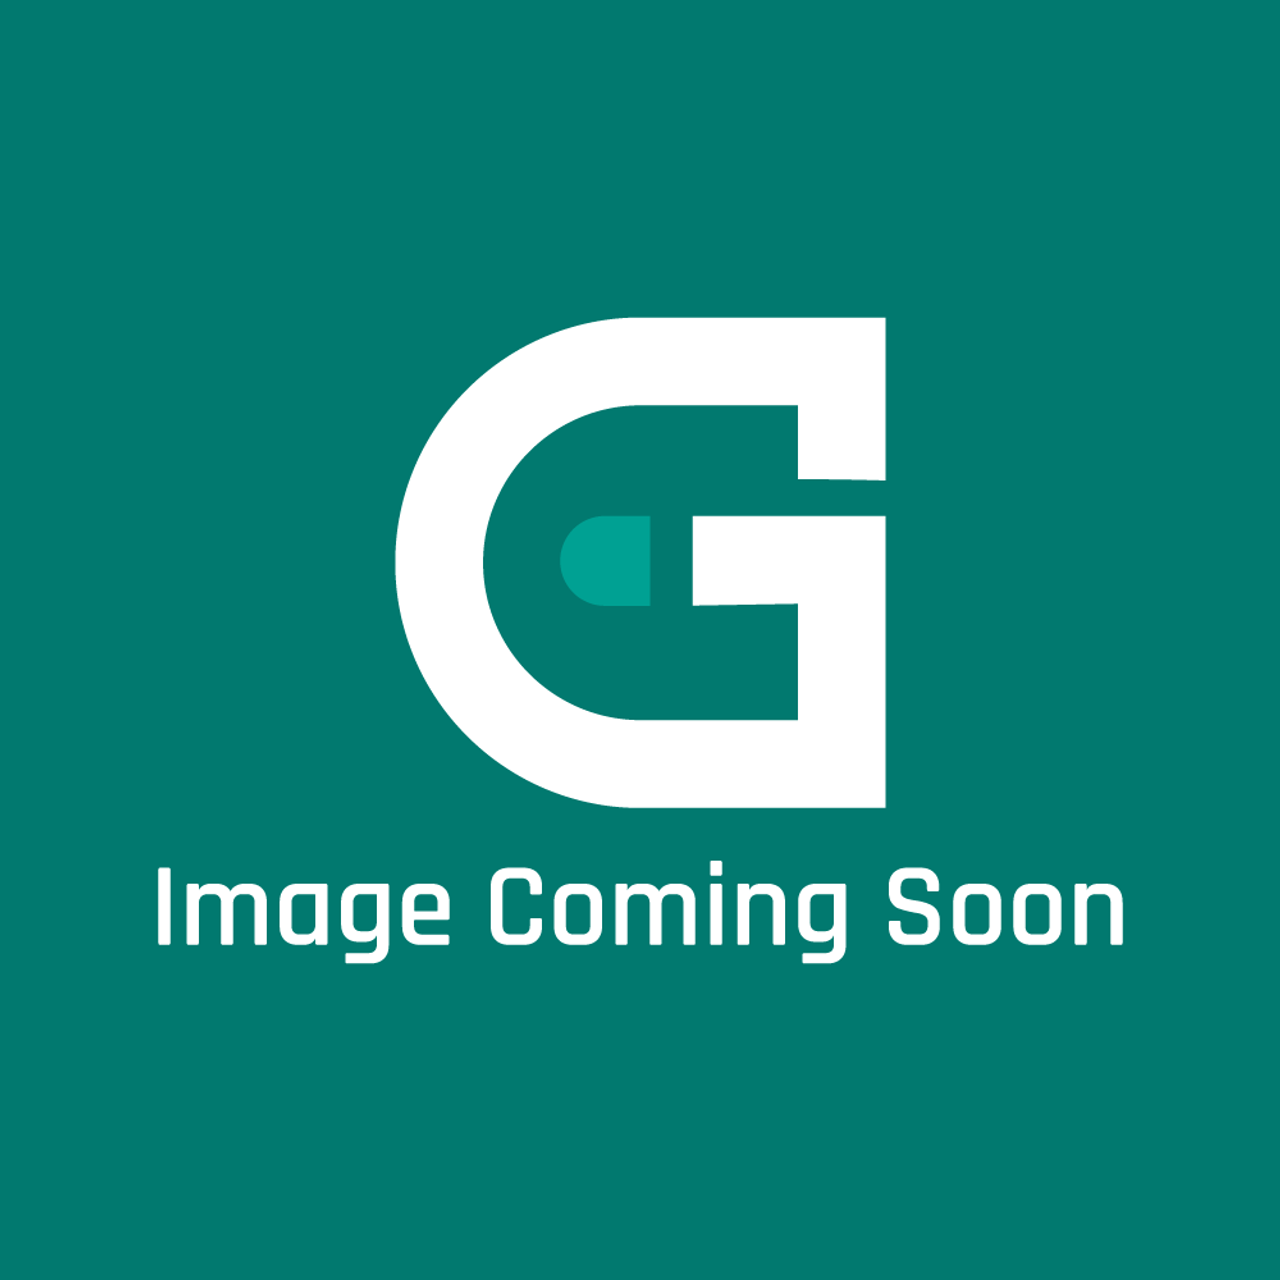 Garland 4526970 - Ng Gas Valve, 120V, 60Hz 3.5 I - Image Coming Soon!